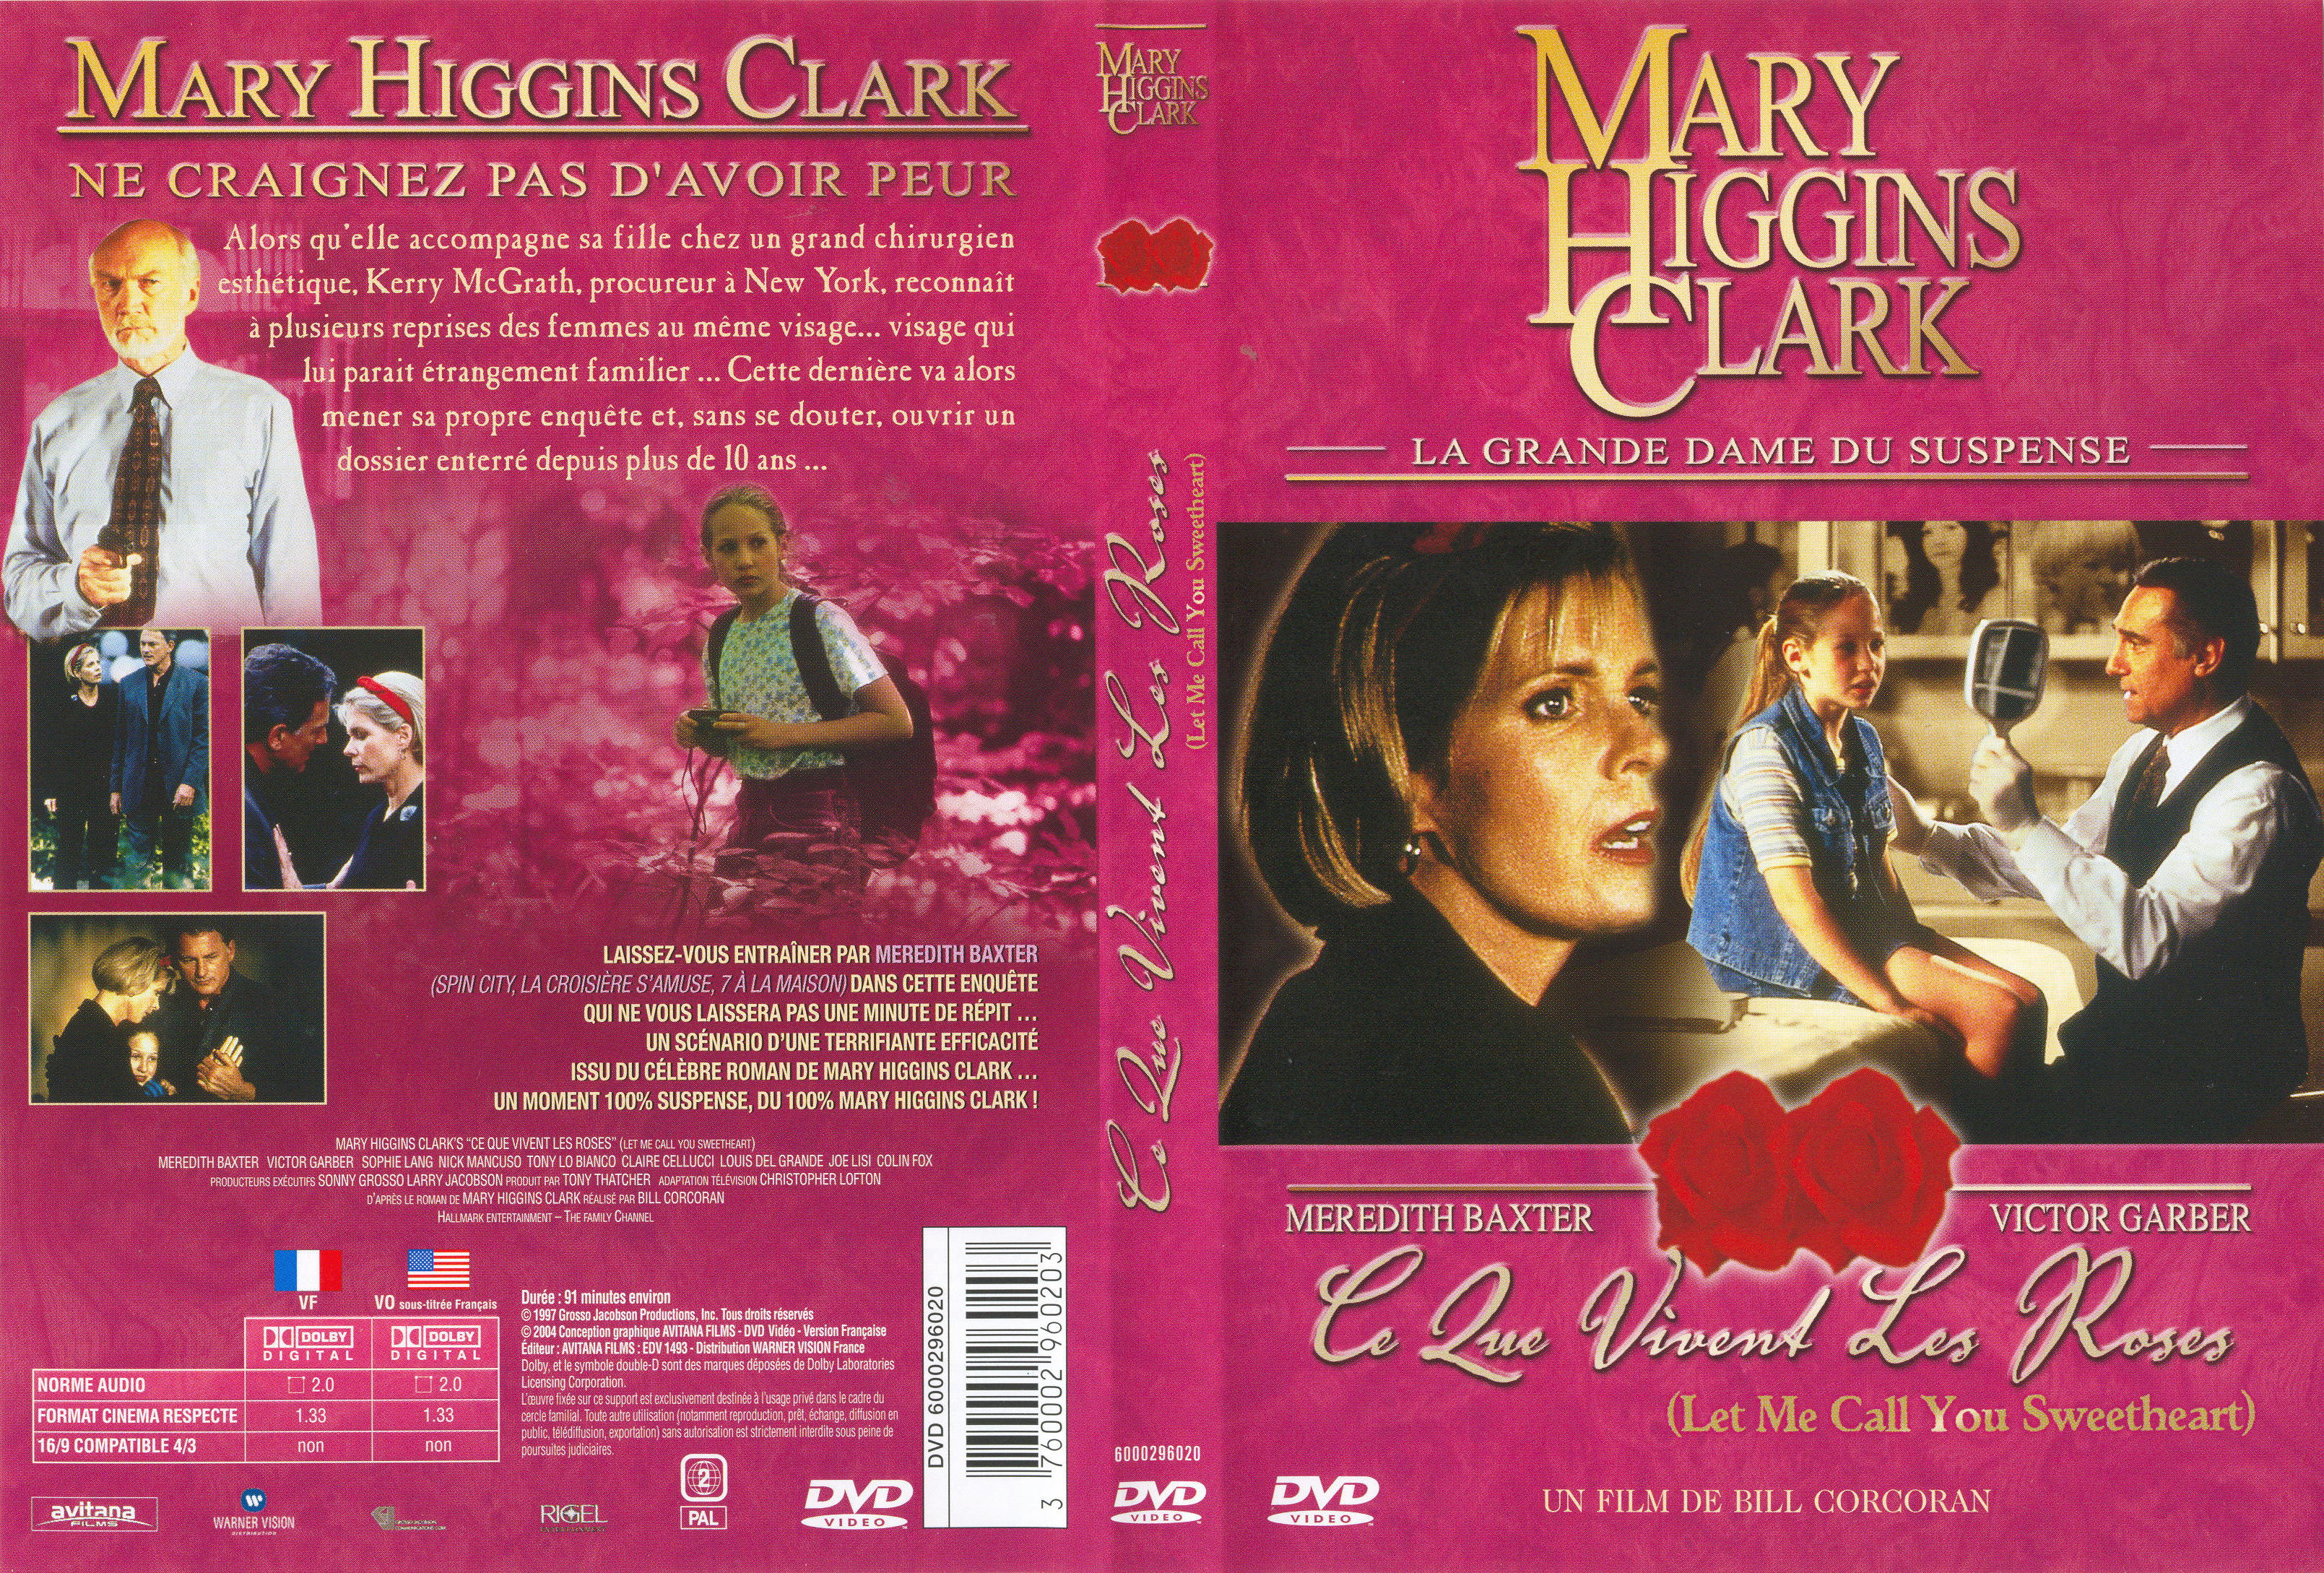 Jaquette DVD de Mary Higgins Clark - Ce que vivent les Roses - Cinéma Passion3218 x 2178